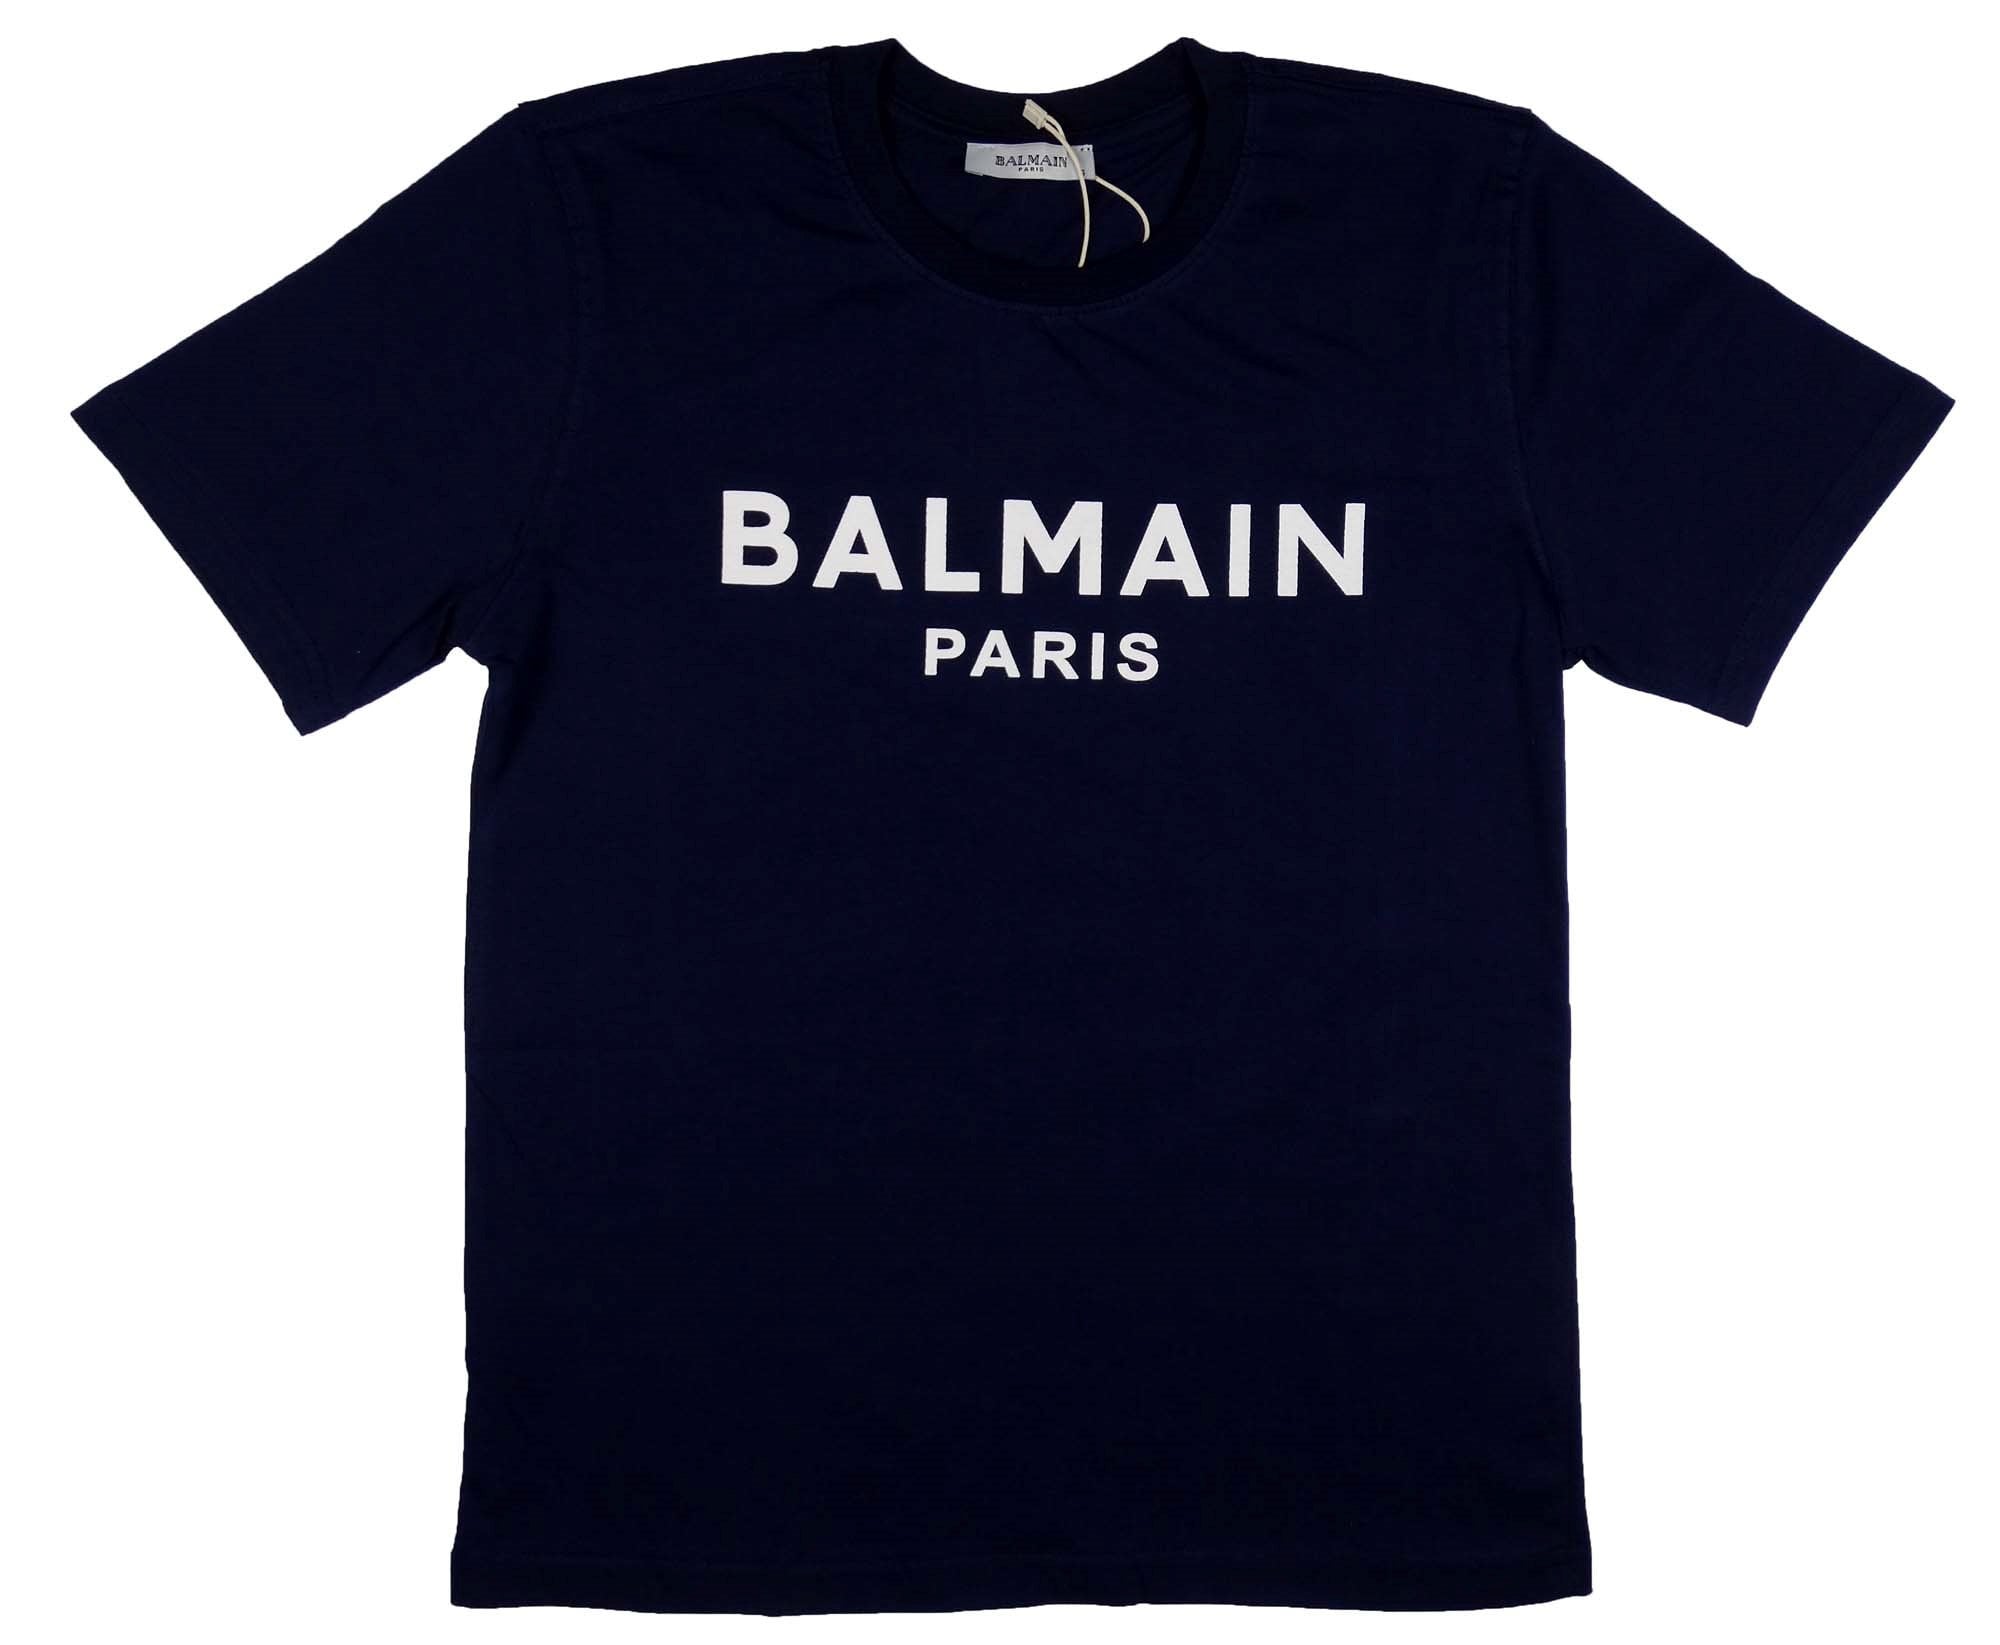 Balmain Shirt Women -